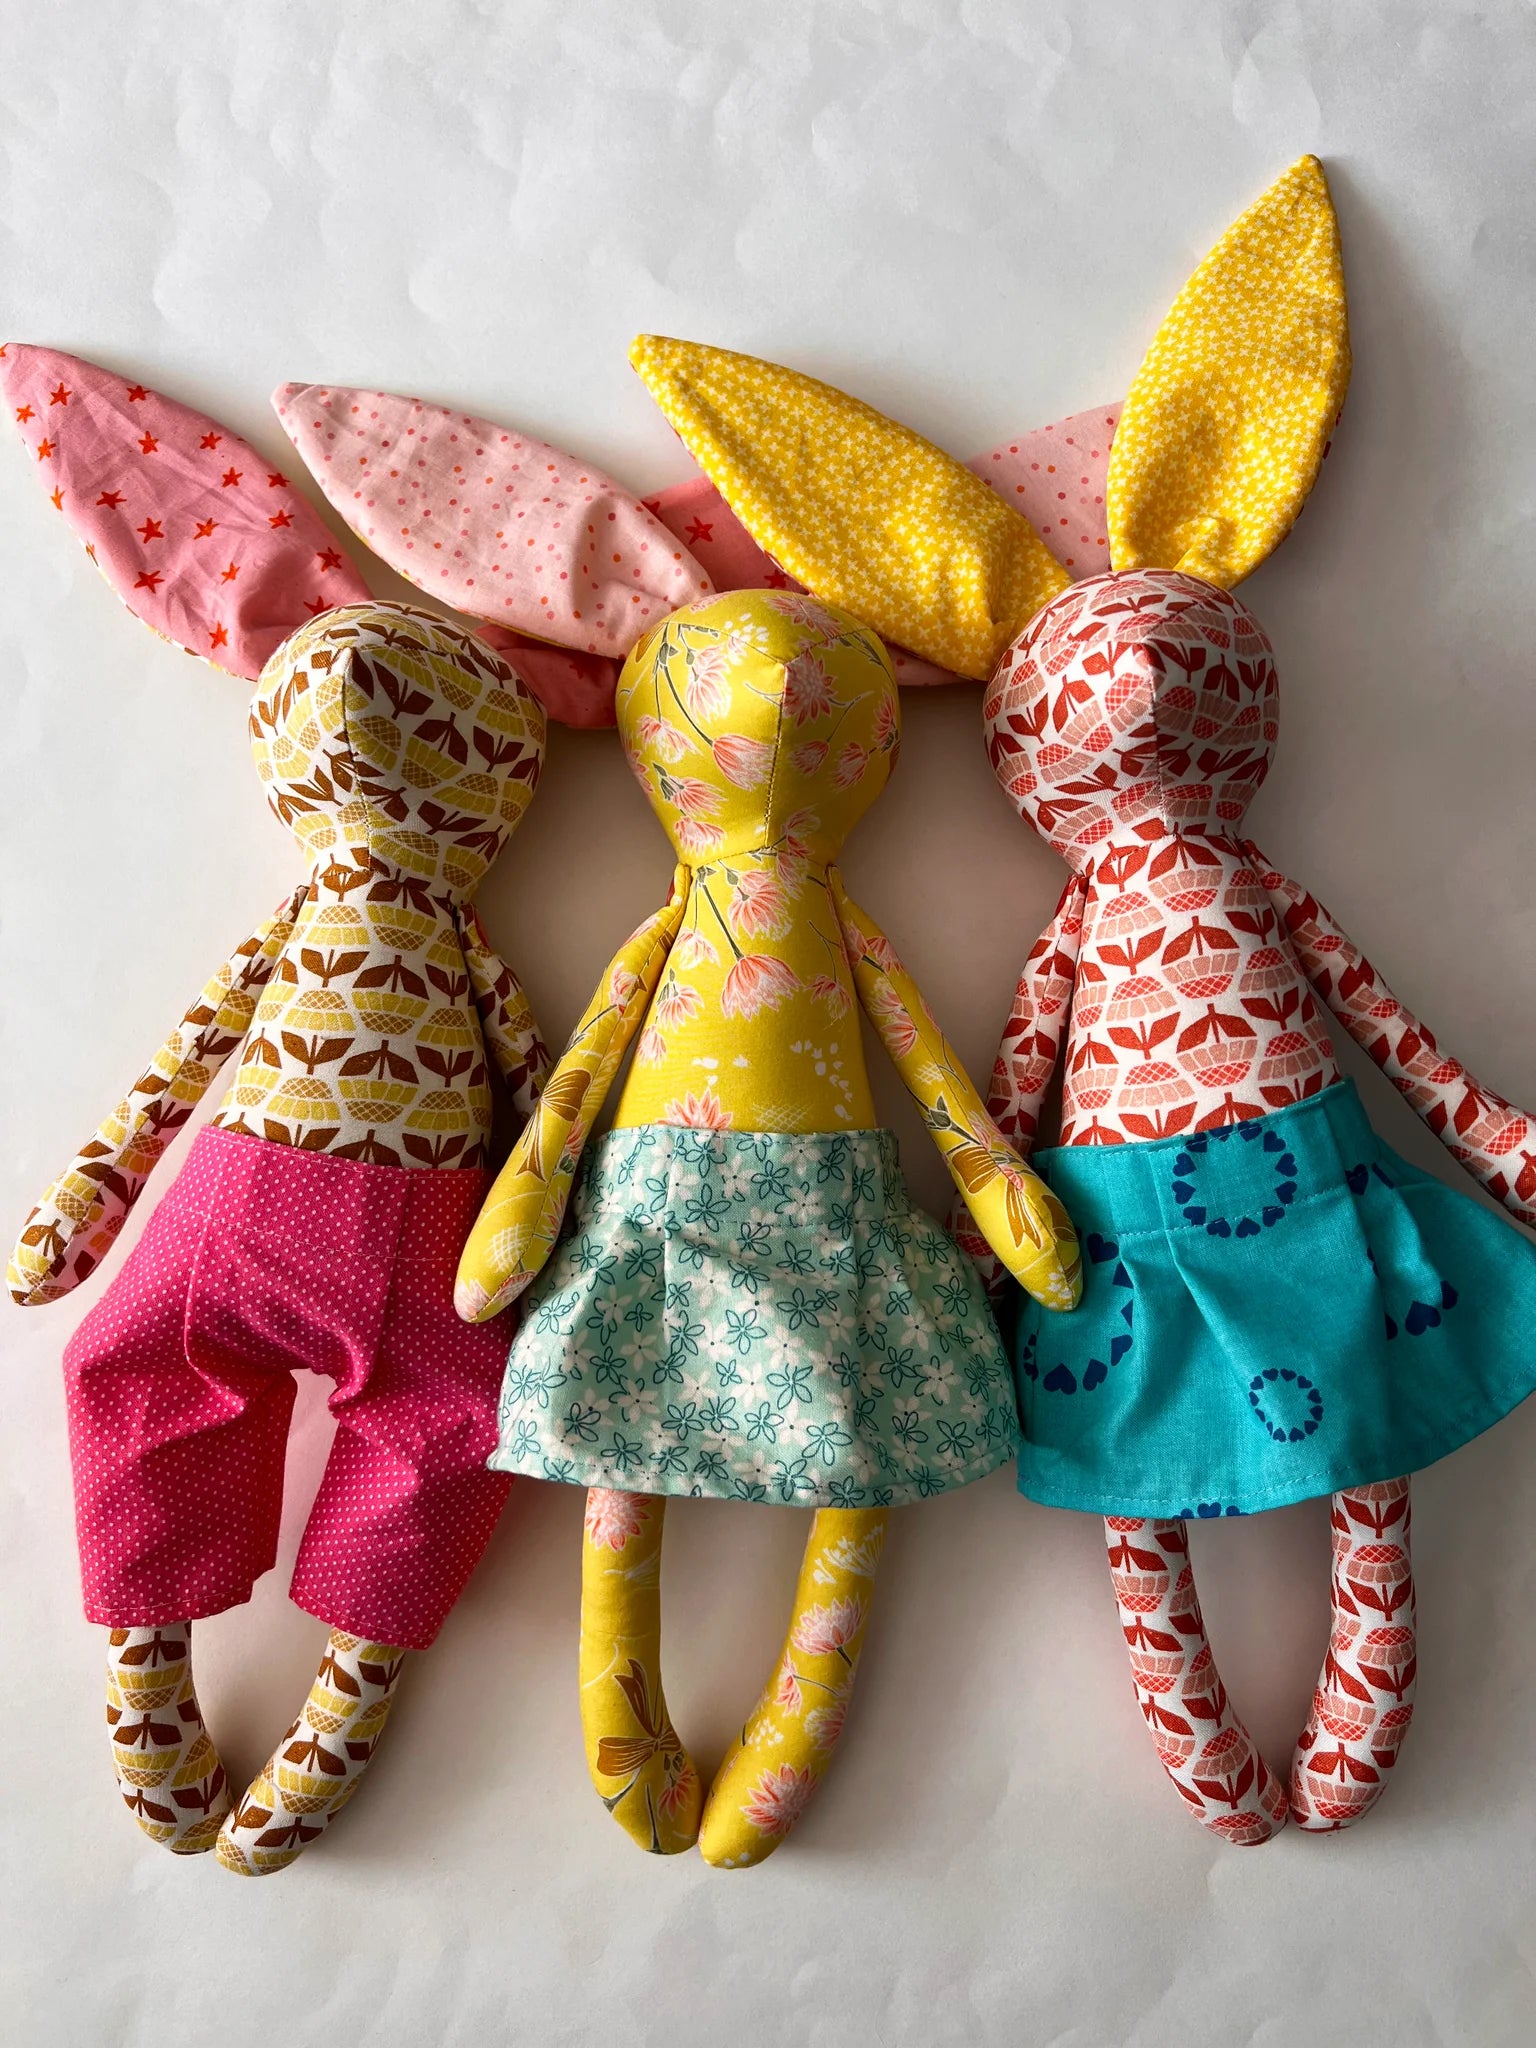 Bunny Rabbit Dolls